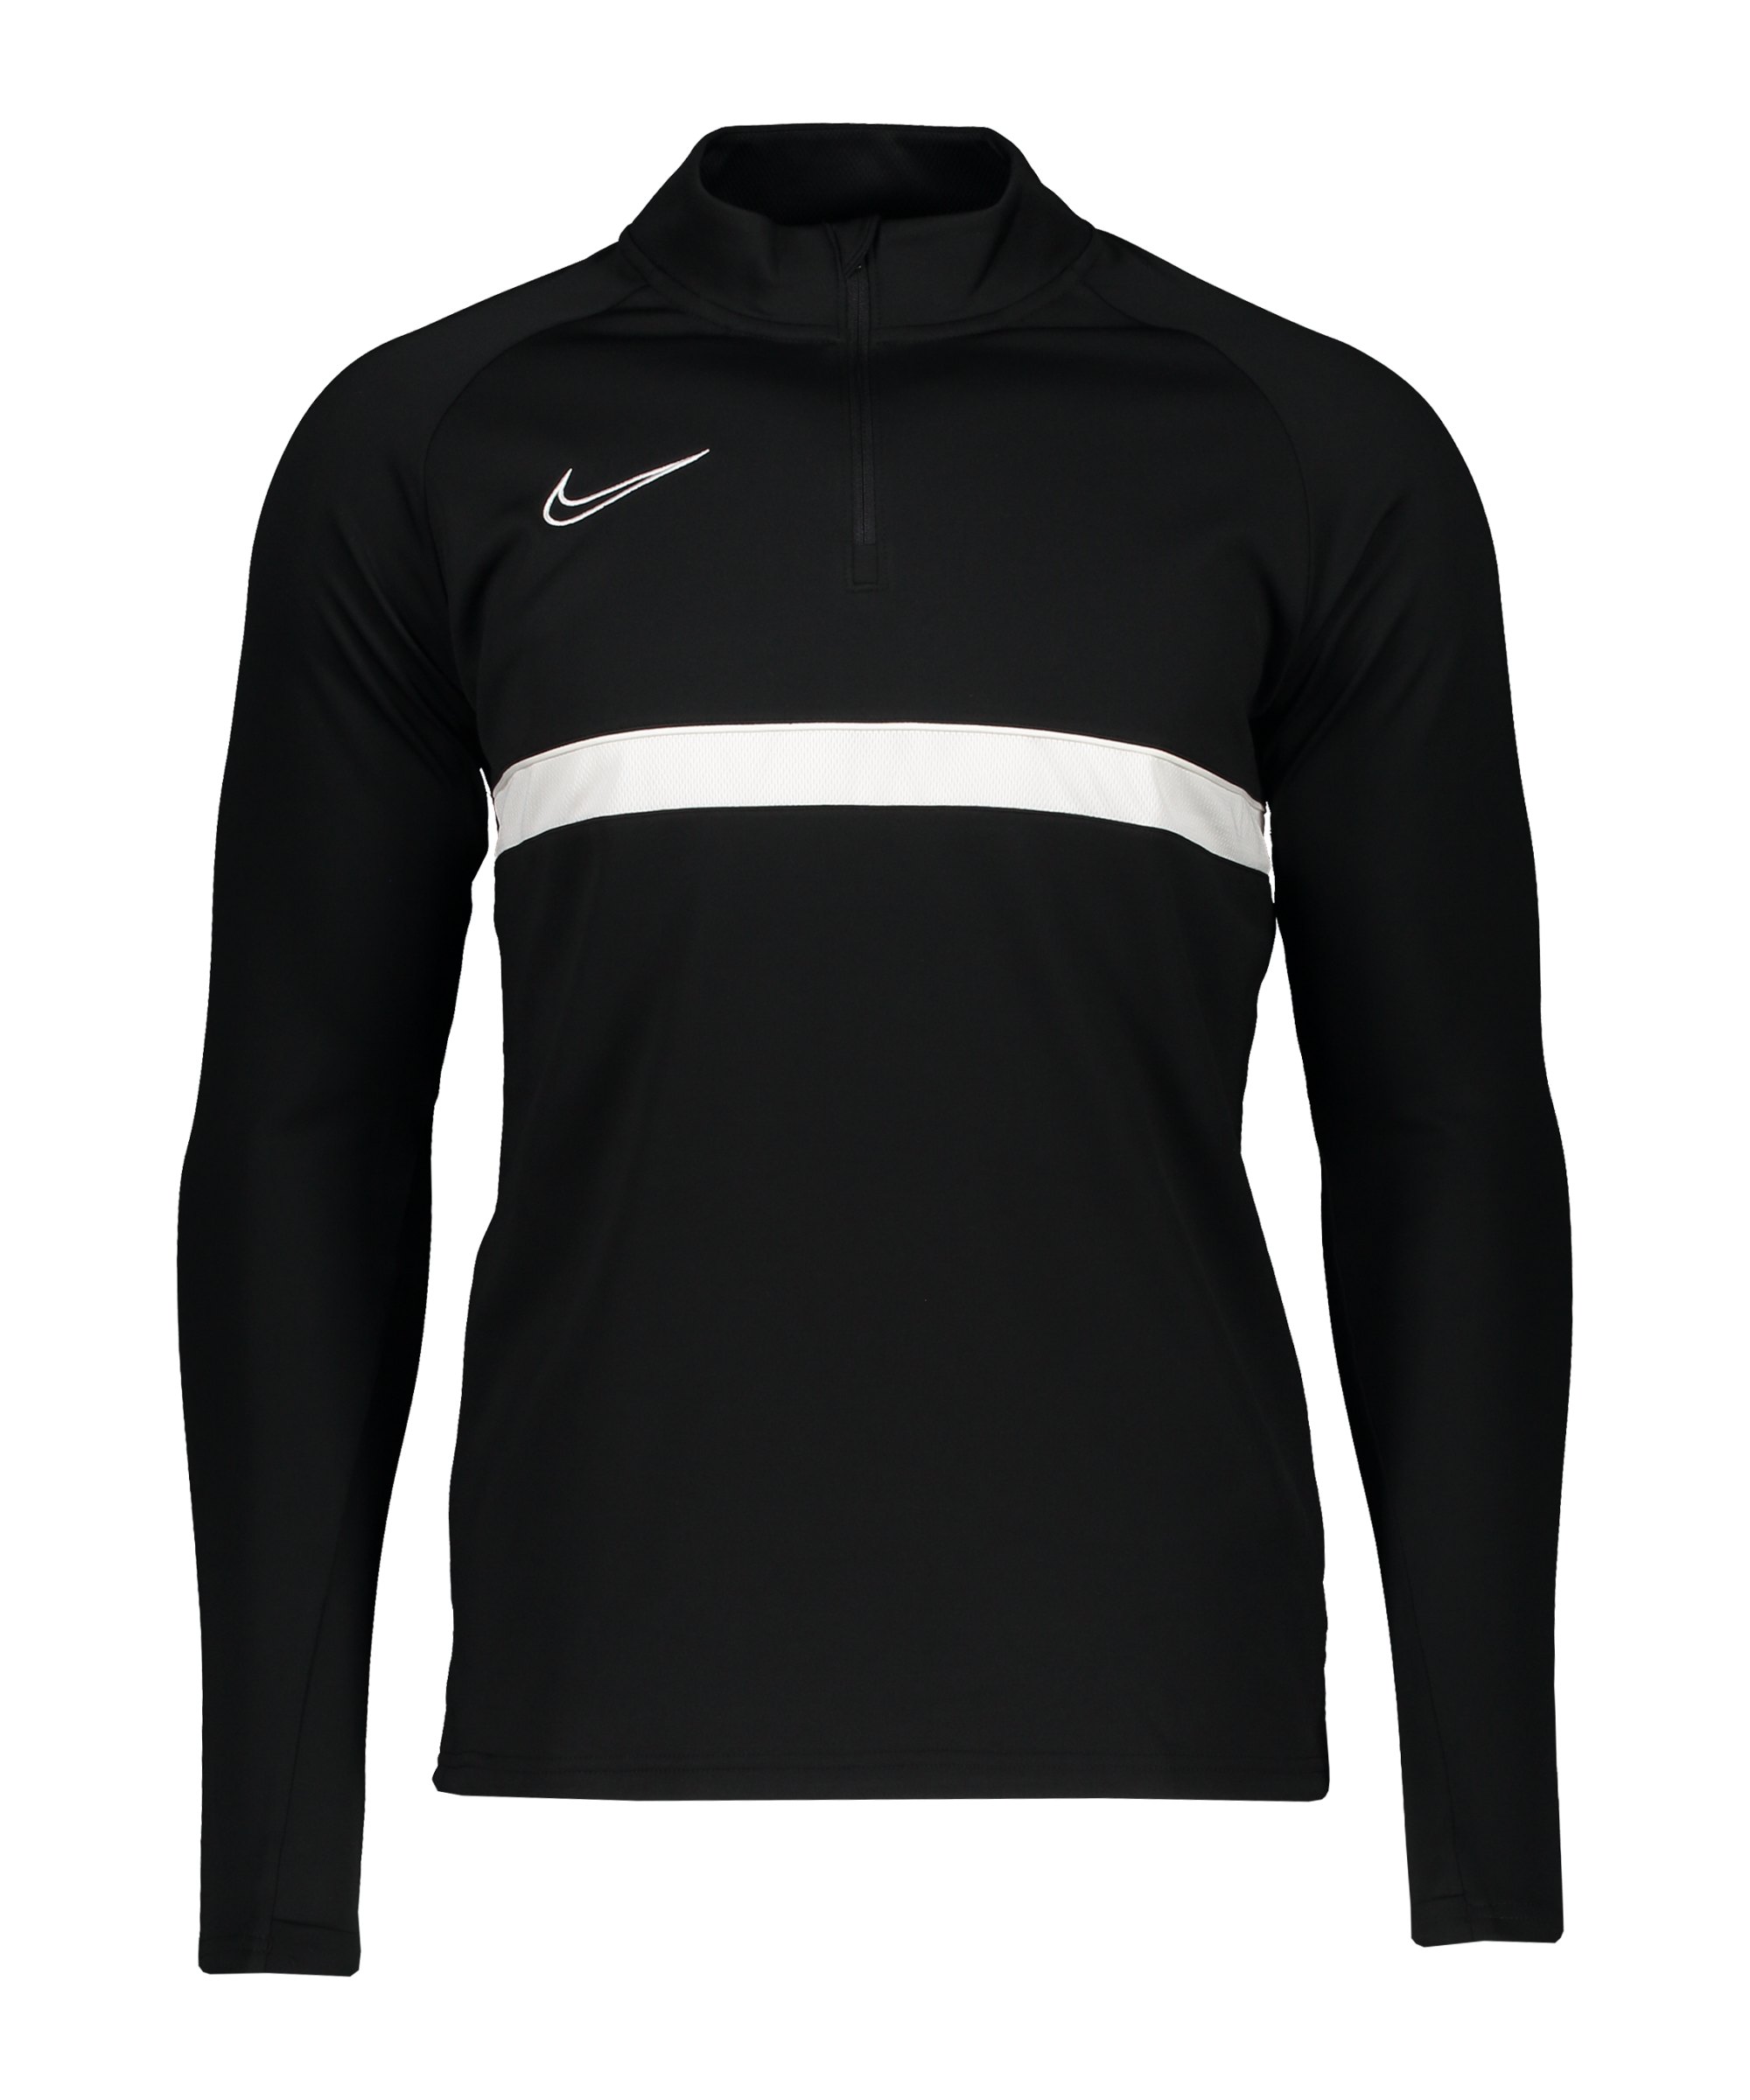 Nike Academy 21 Drill Top Schwarz F010 - schwarz